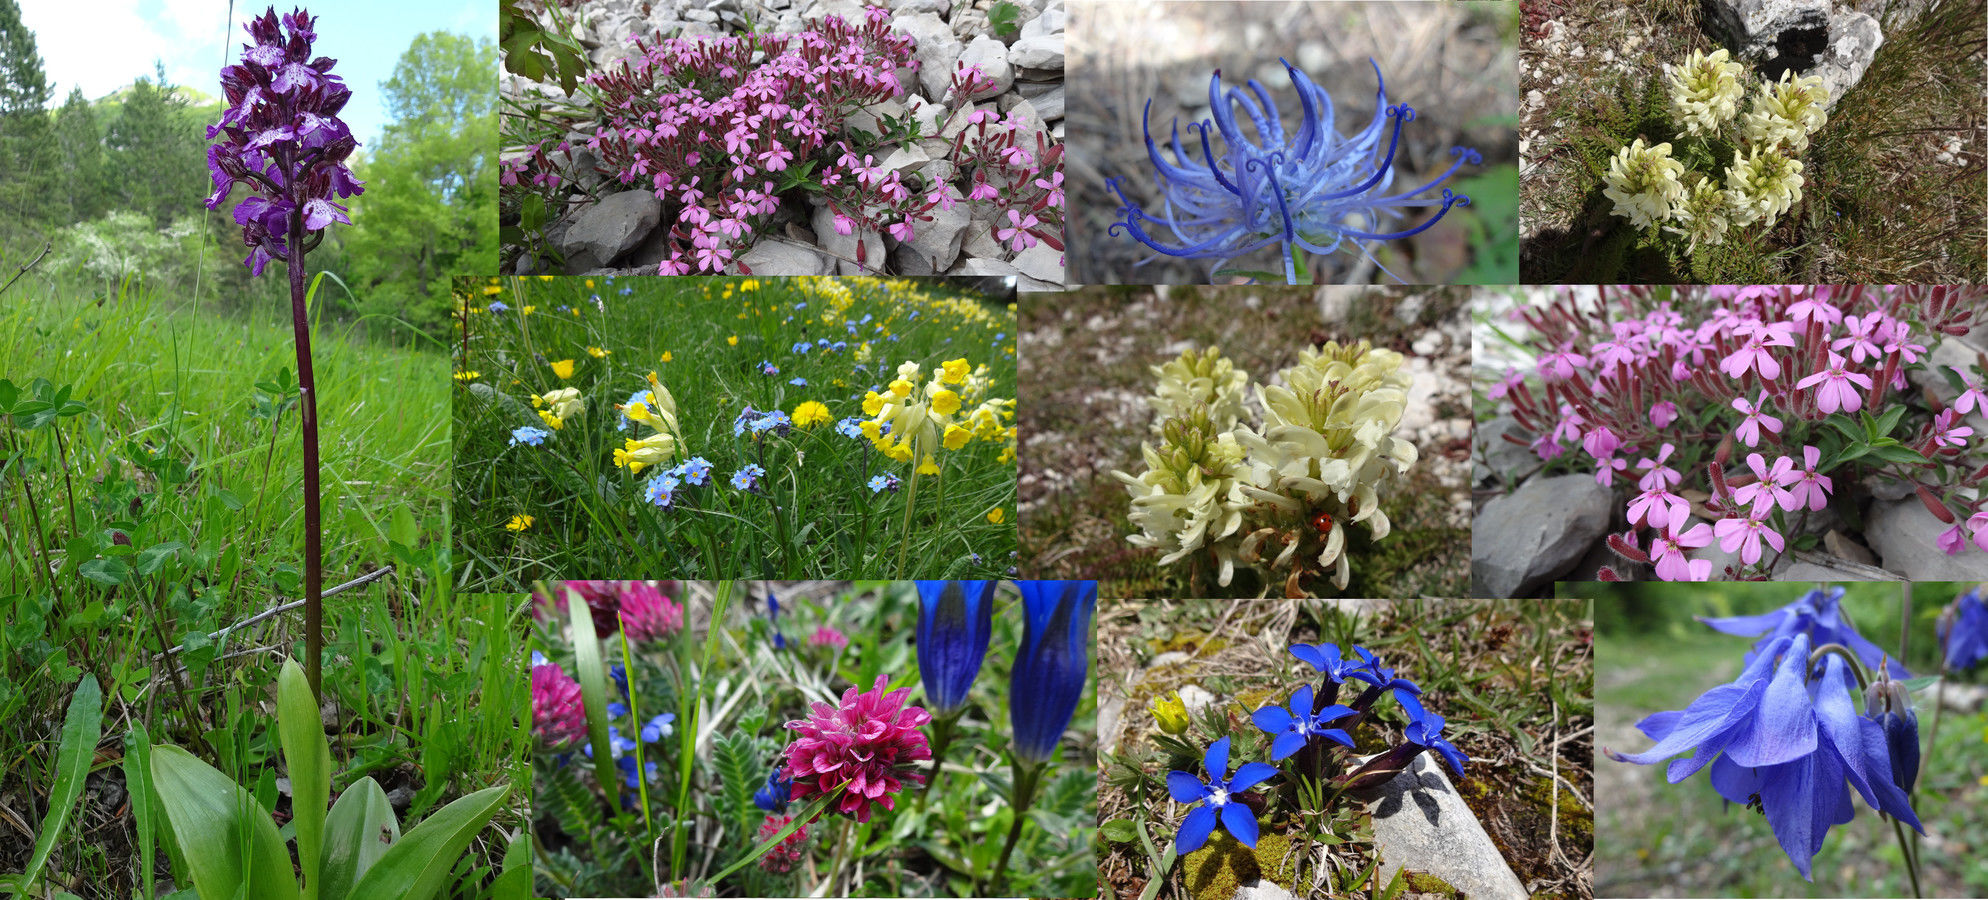 Compilation de diverses fleurs rencontrées